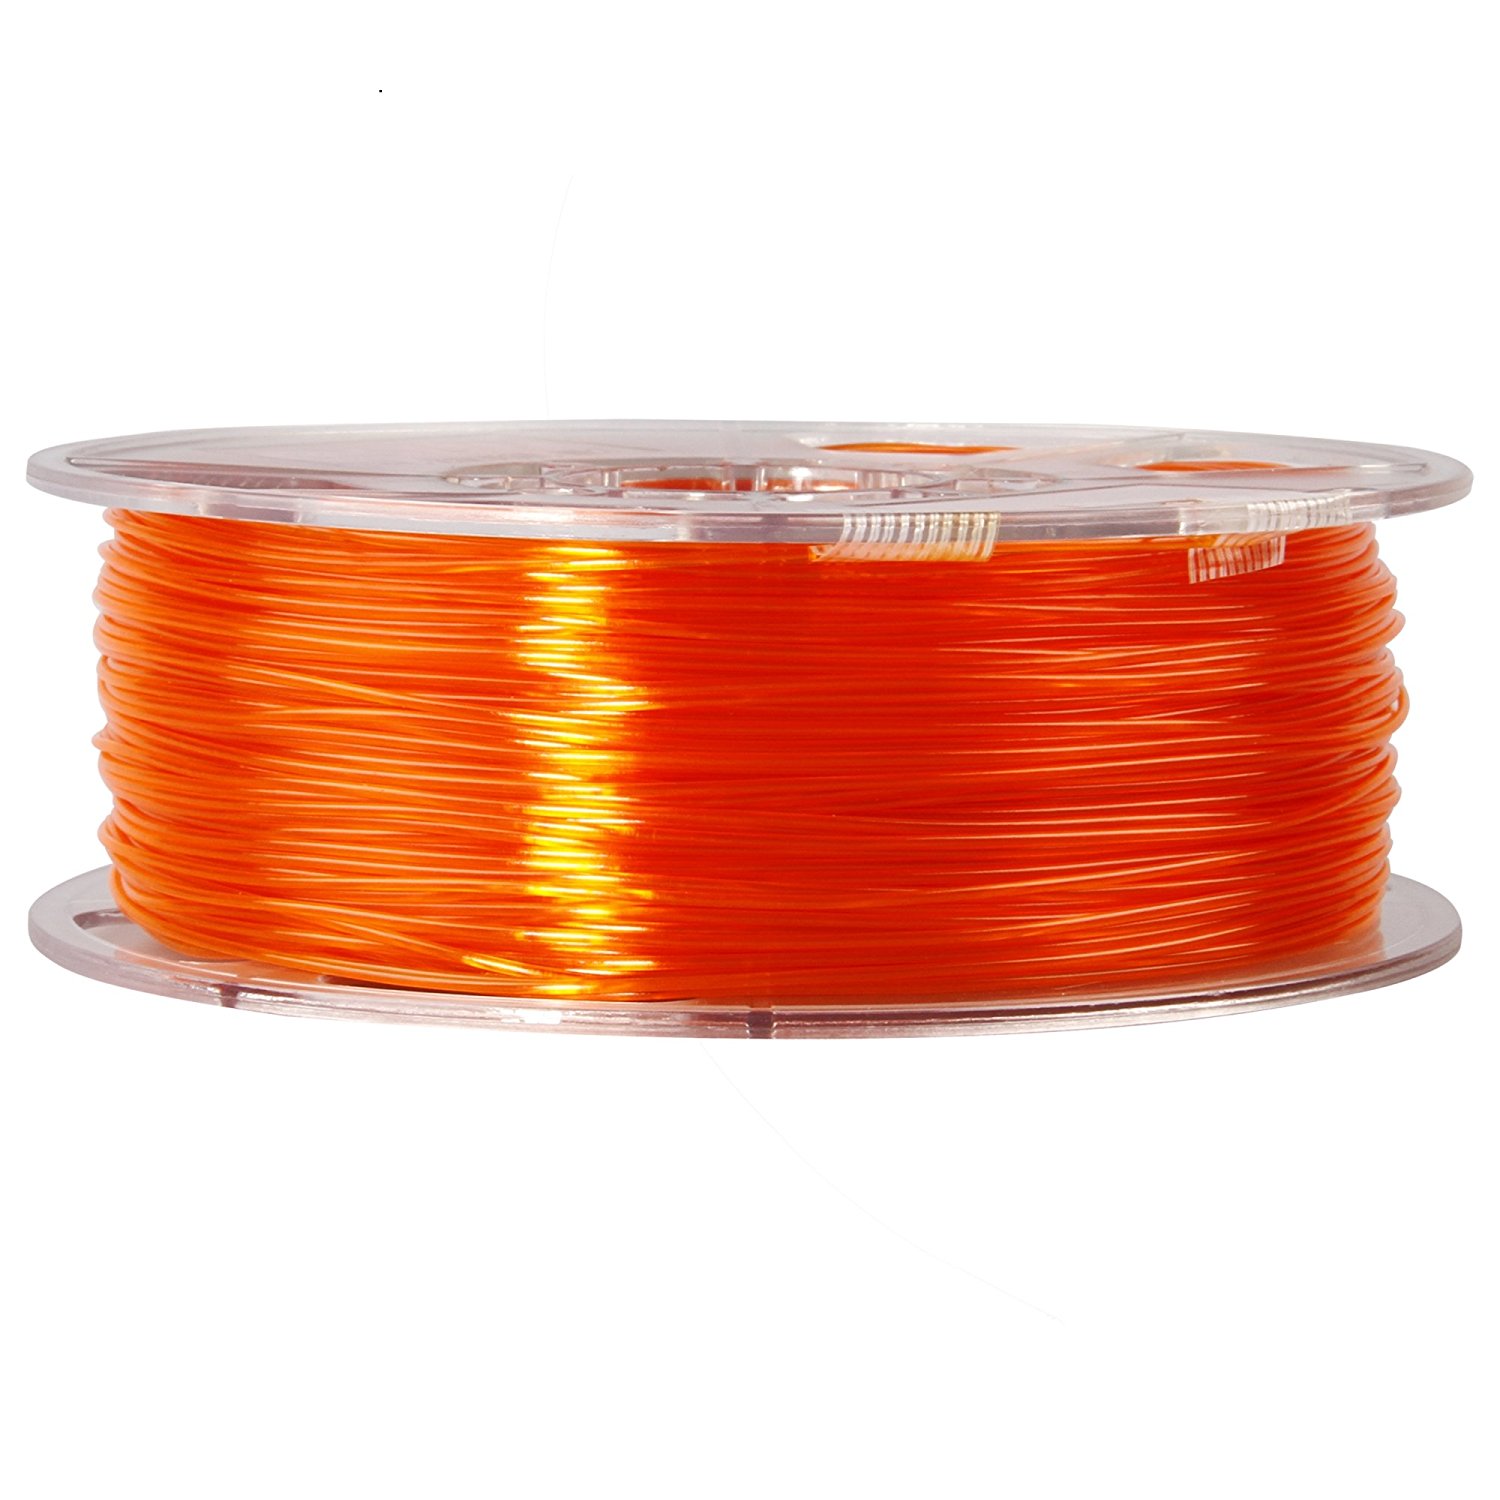 ESUN Orange PETG 3 mm - 3D Compare Materials